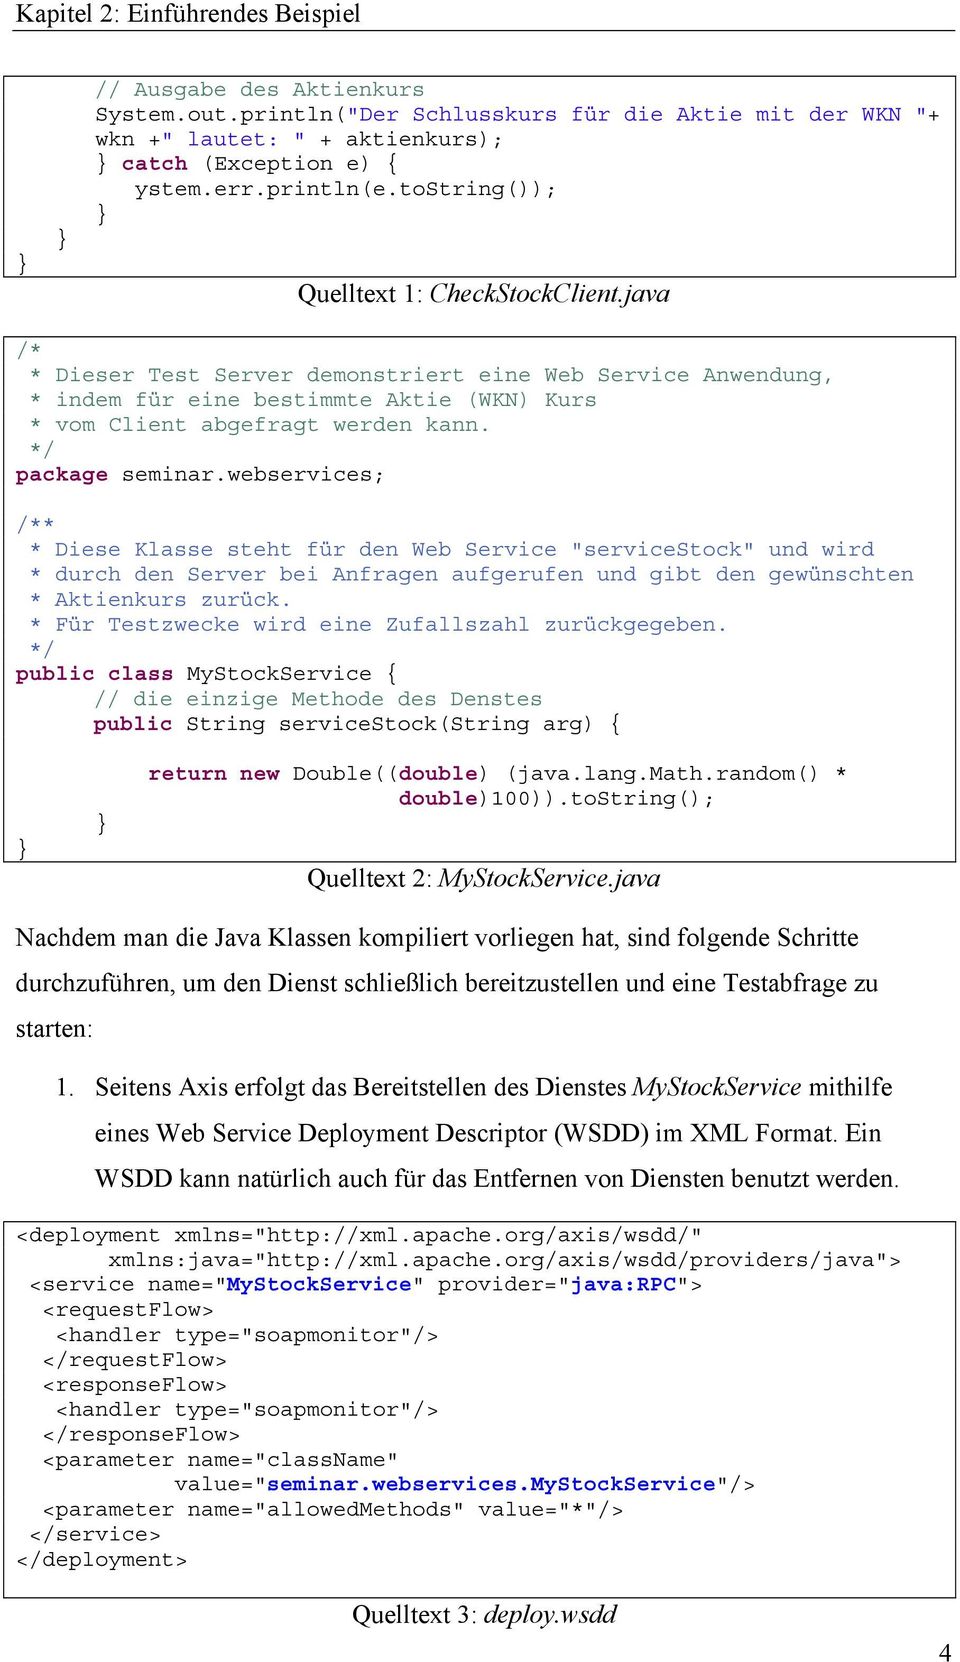 java /* * Dieser Test Server demonstriert eine Web Service Anwendung, * indem für eine bestimmte Aktie (WKN) Kurs * vom Client abgefragt werden kann. */ package seminar.